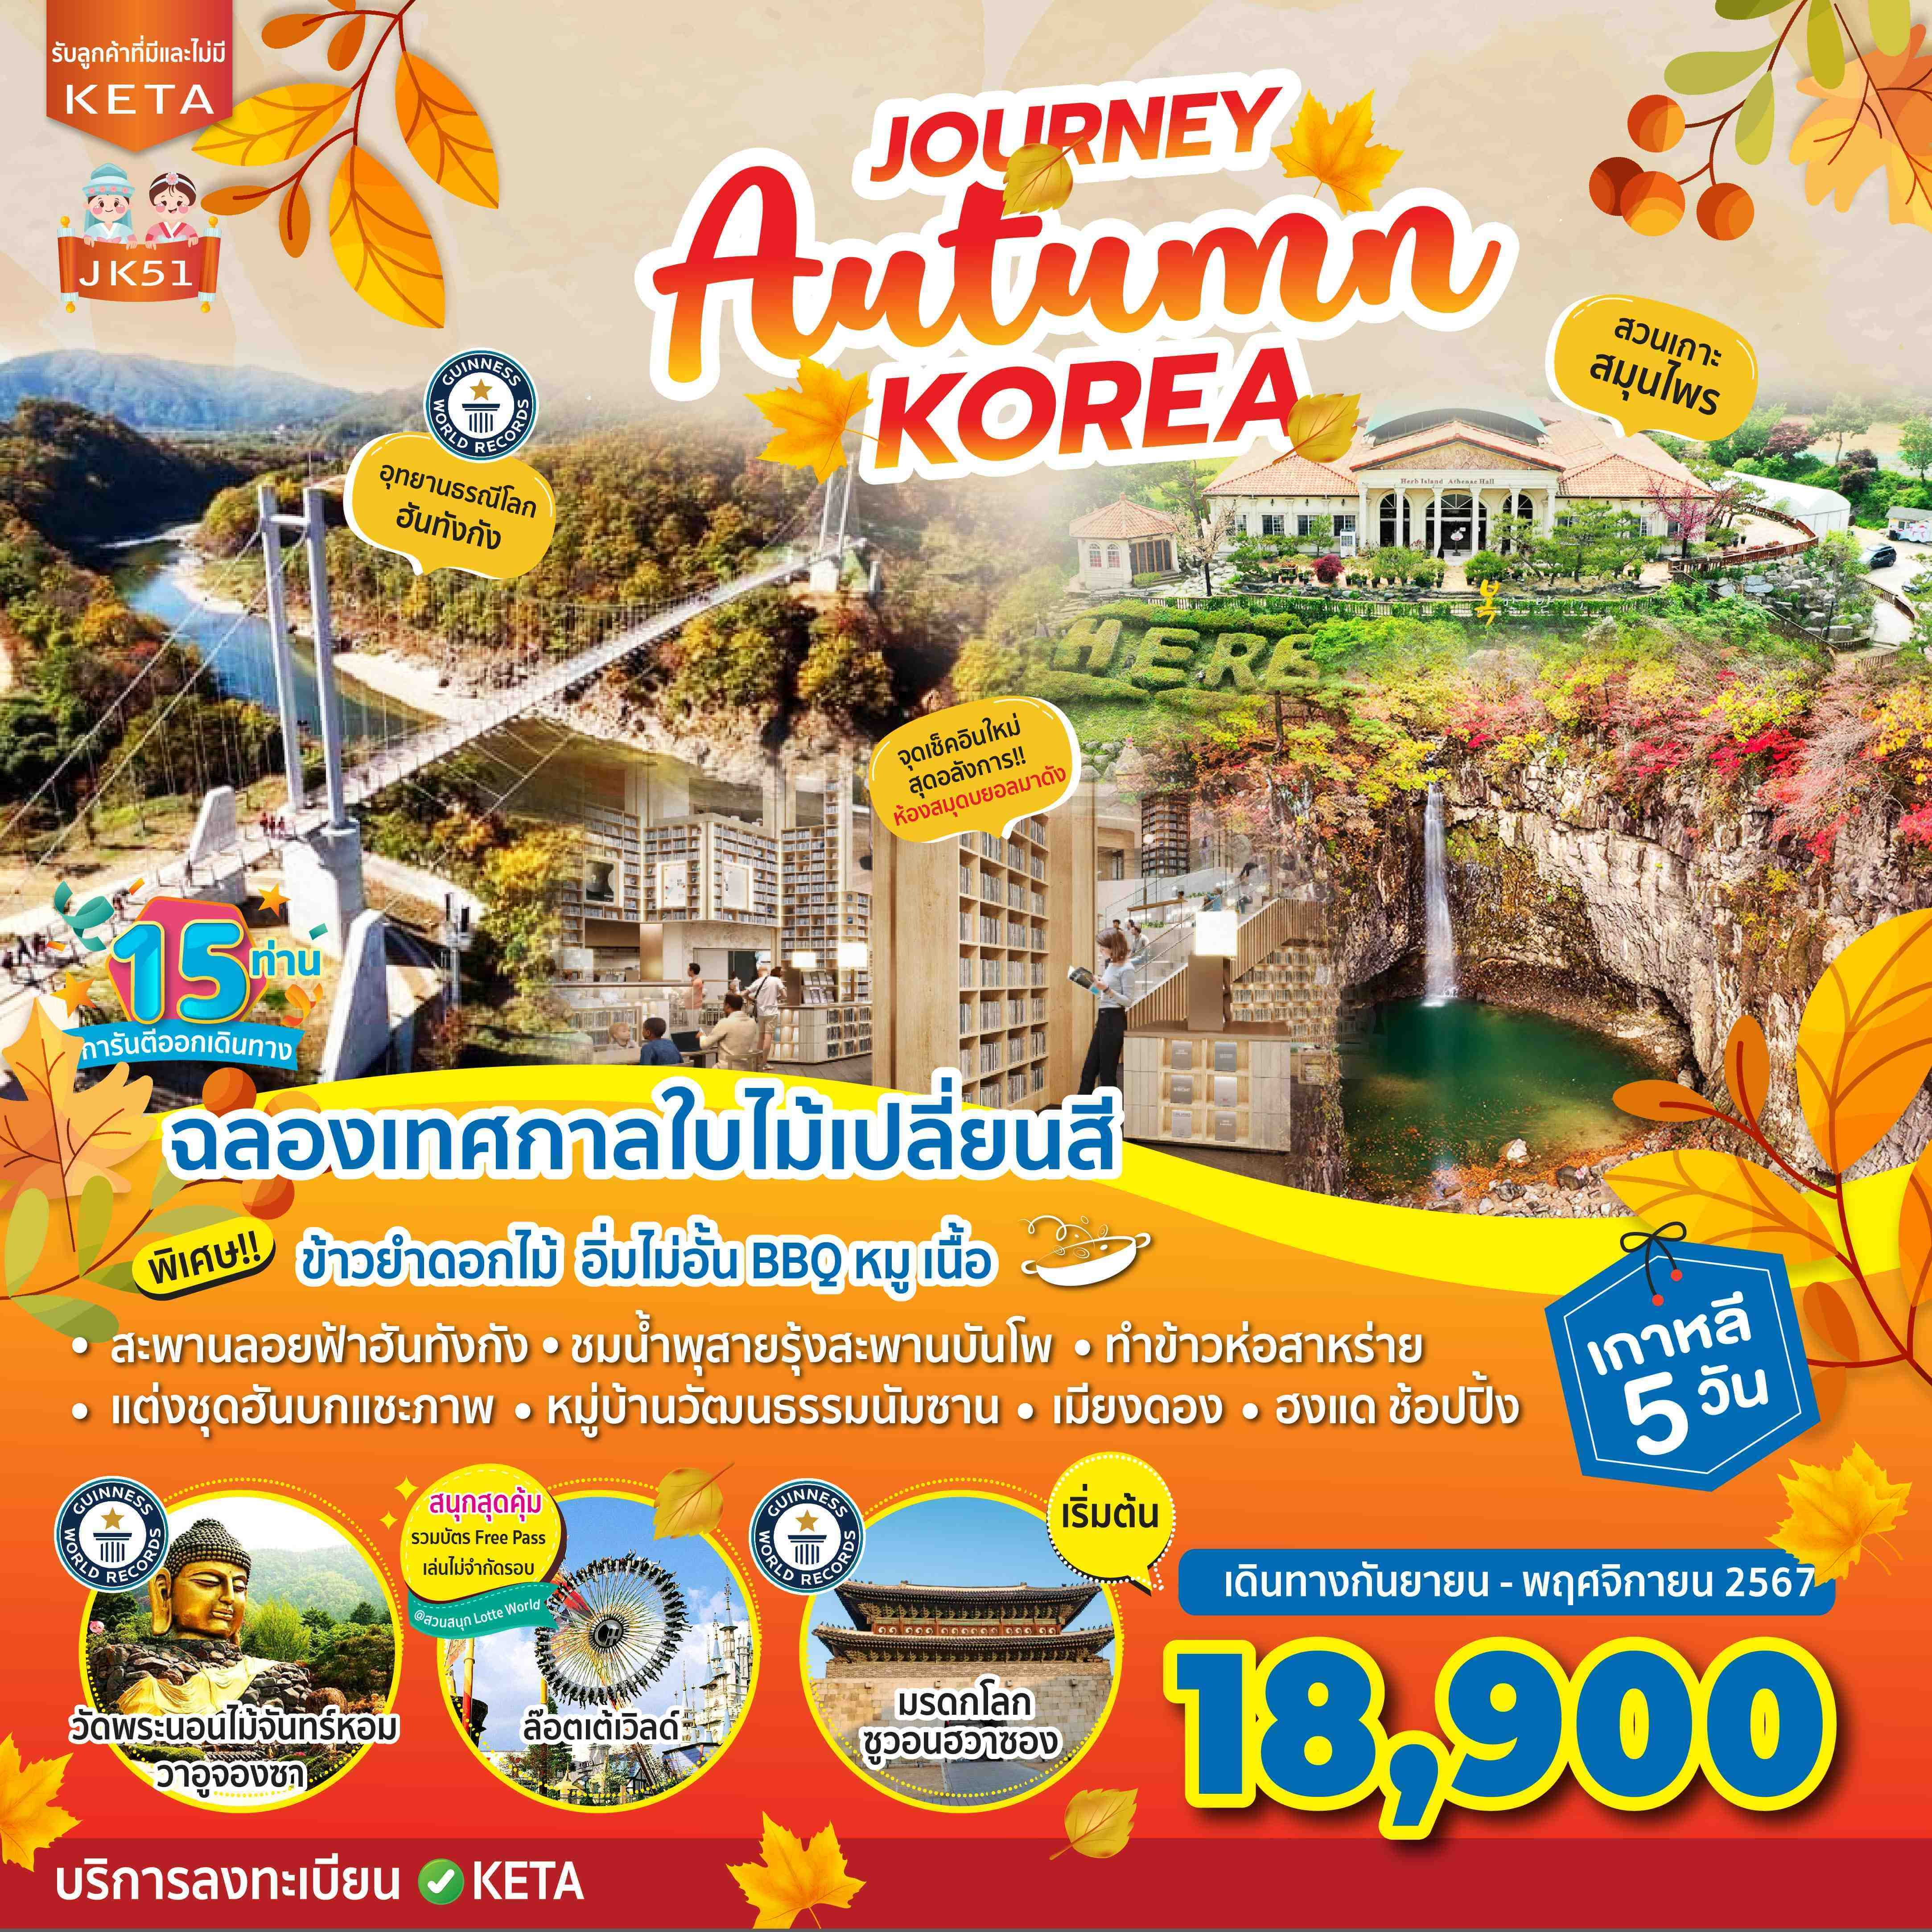 ทัวร์เกาหลี Journey Autumn Korea 5วัน 3คืน (7C)